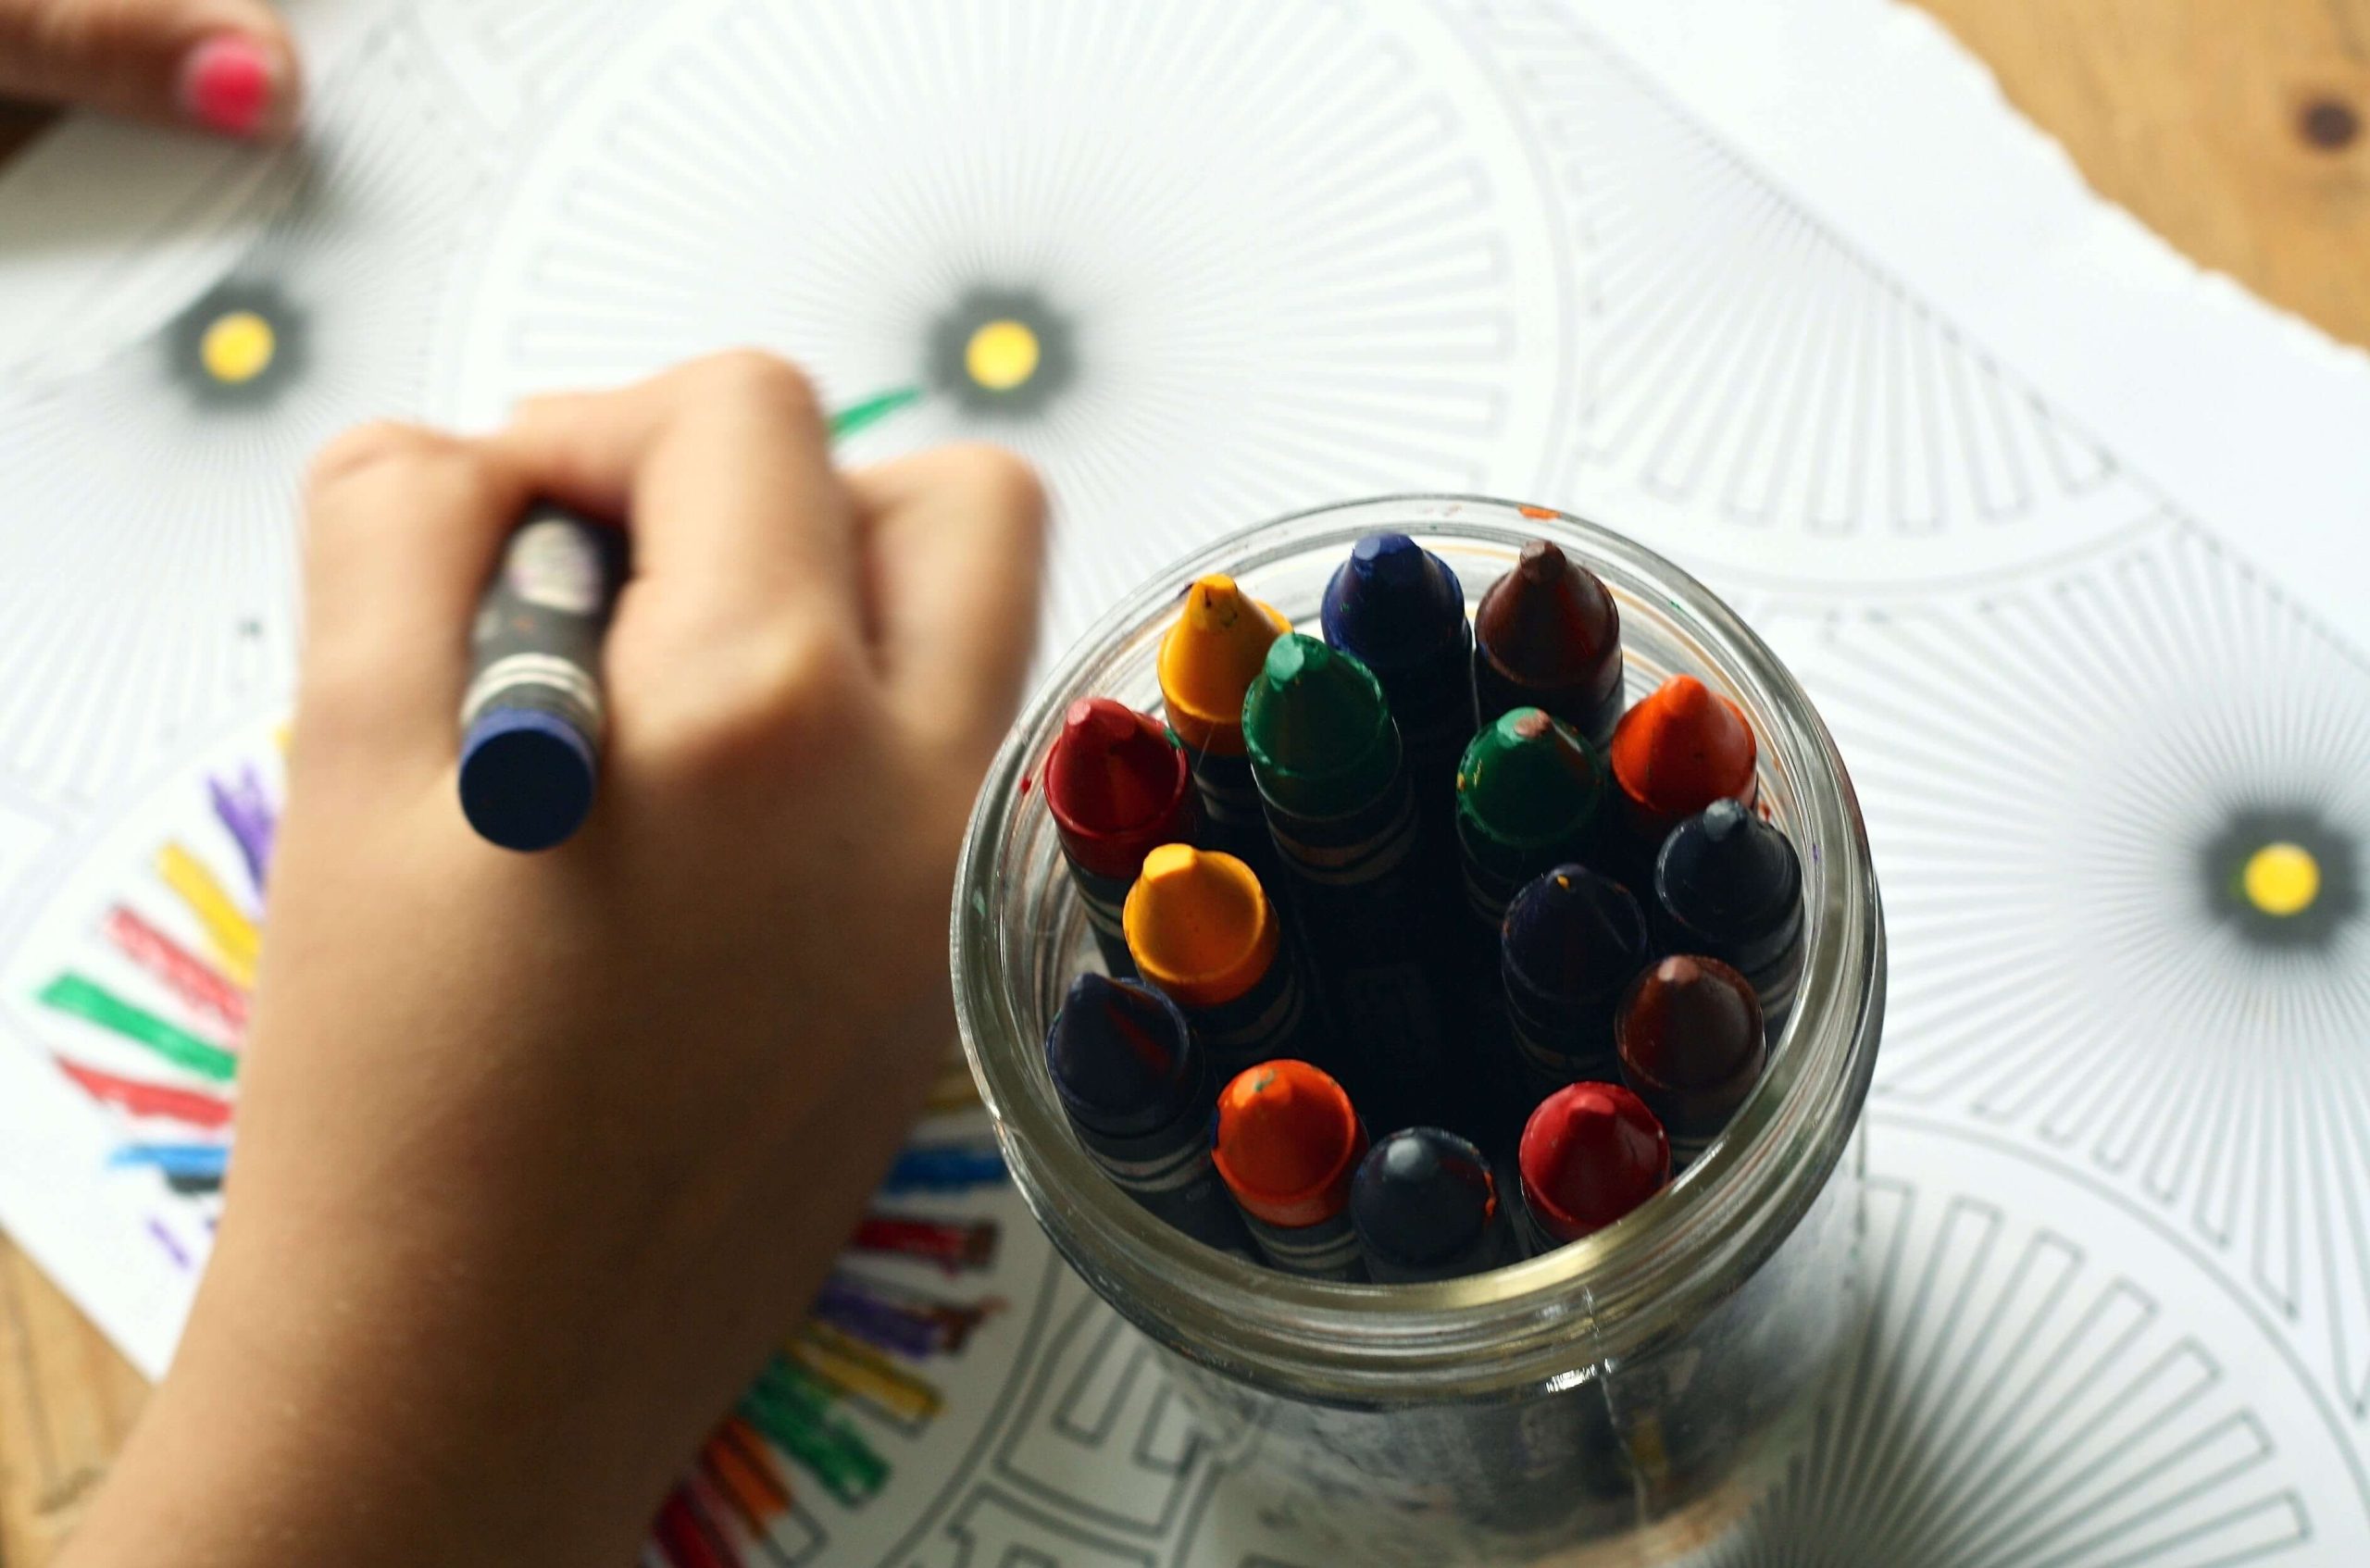 Dłoń dziecka kolorującego obrazek, aby nauczyć się angielskich słówek związanych z kolorami.